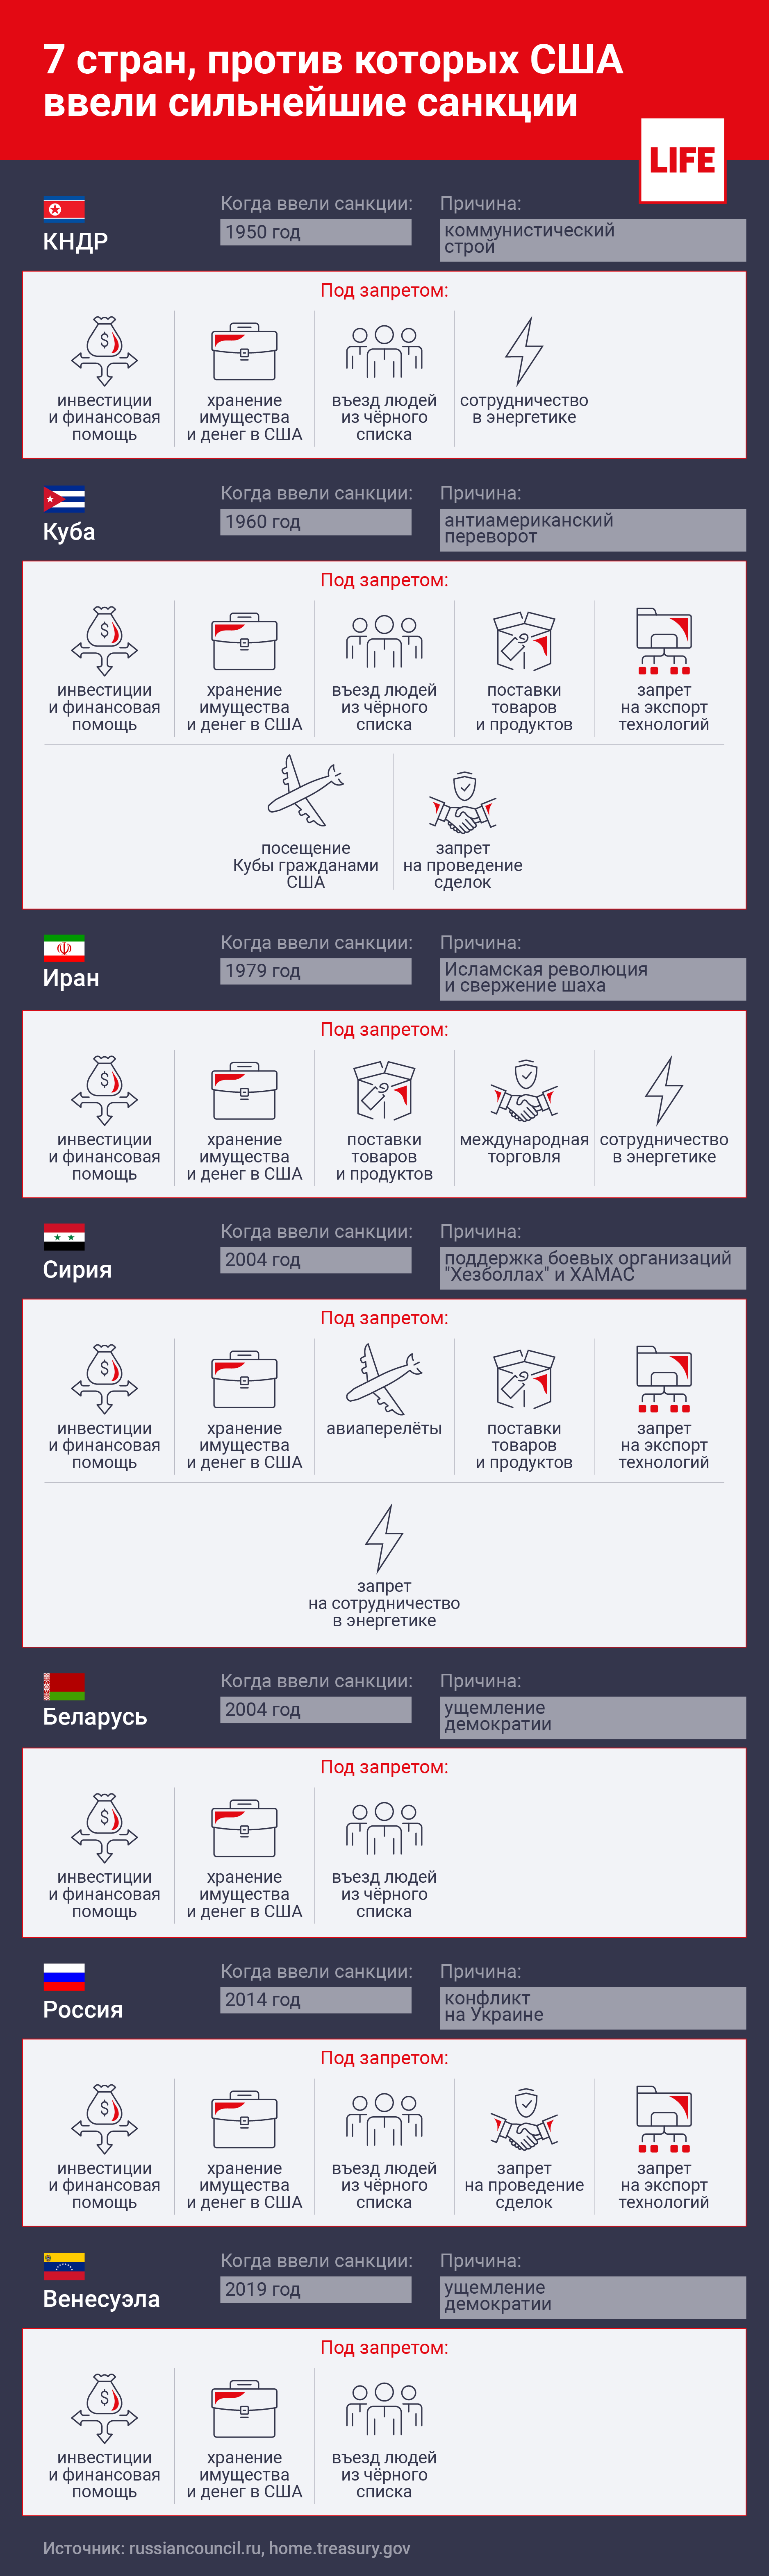 7 стран, против которых ввели сильнейшие санкции. Инфографика © LIFE